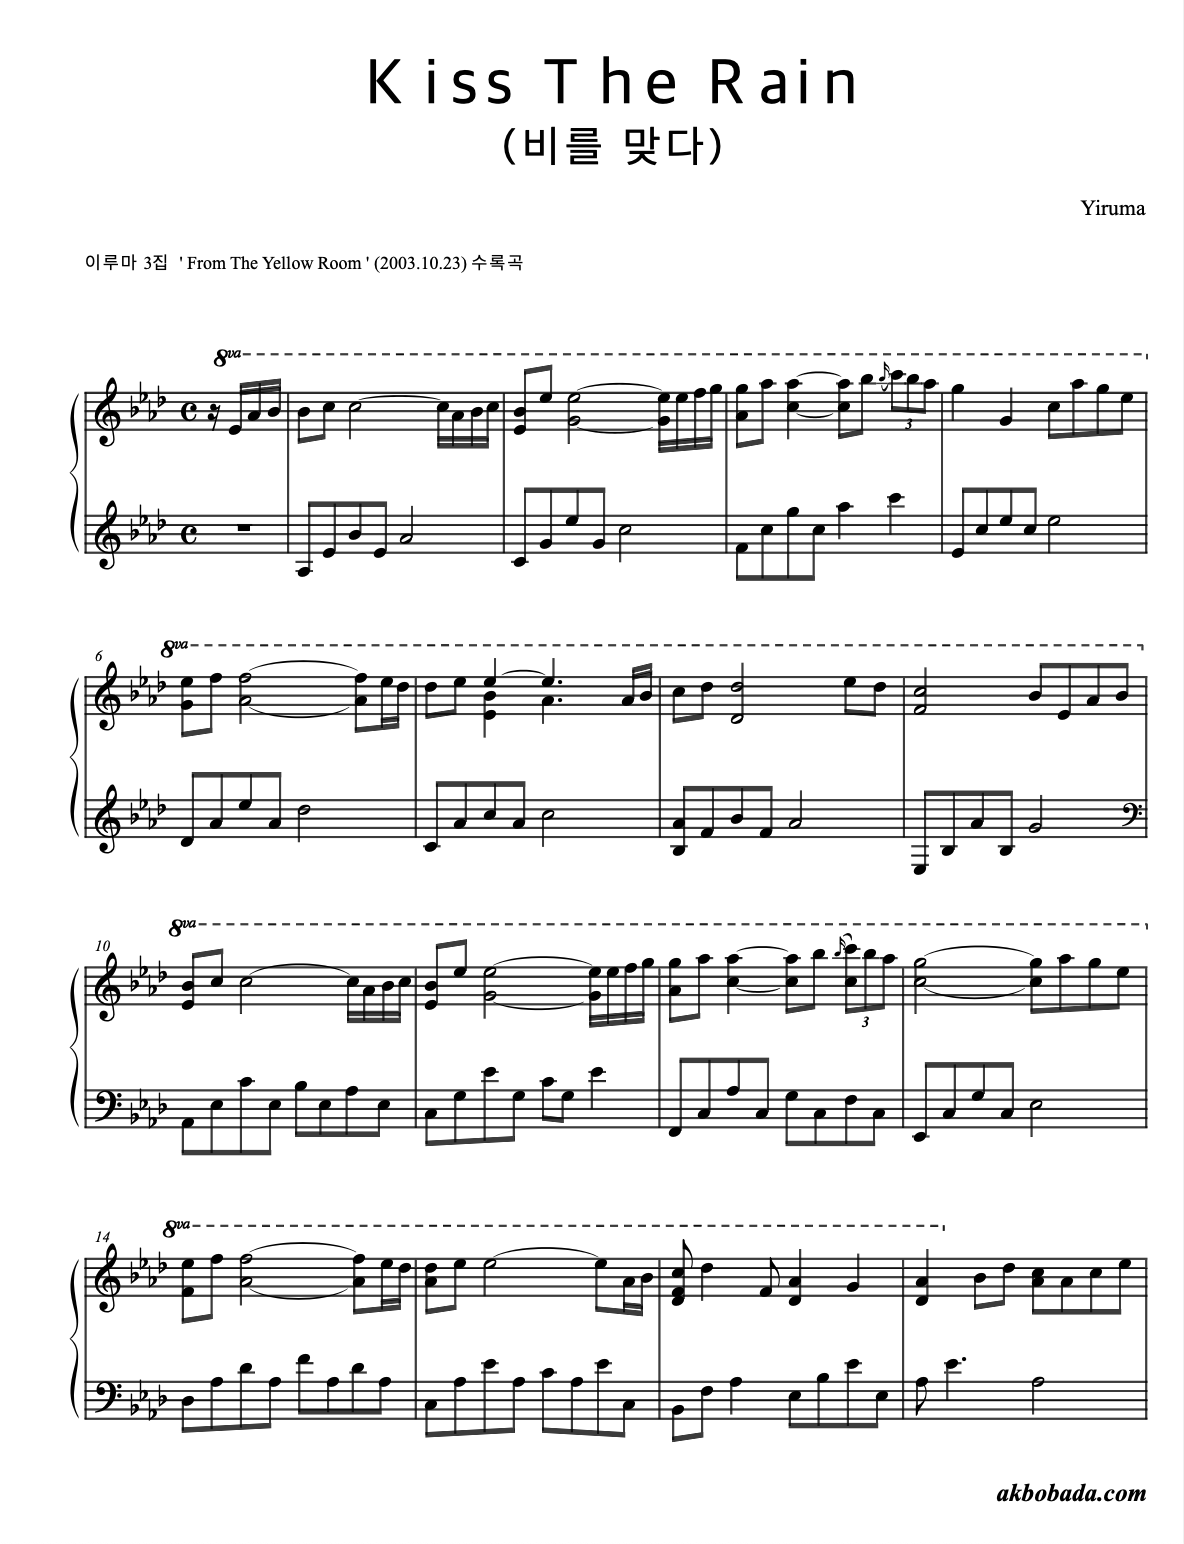 Sheet piano Kiss The Rain Yiruma 1